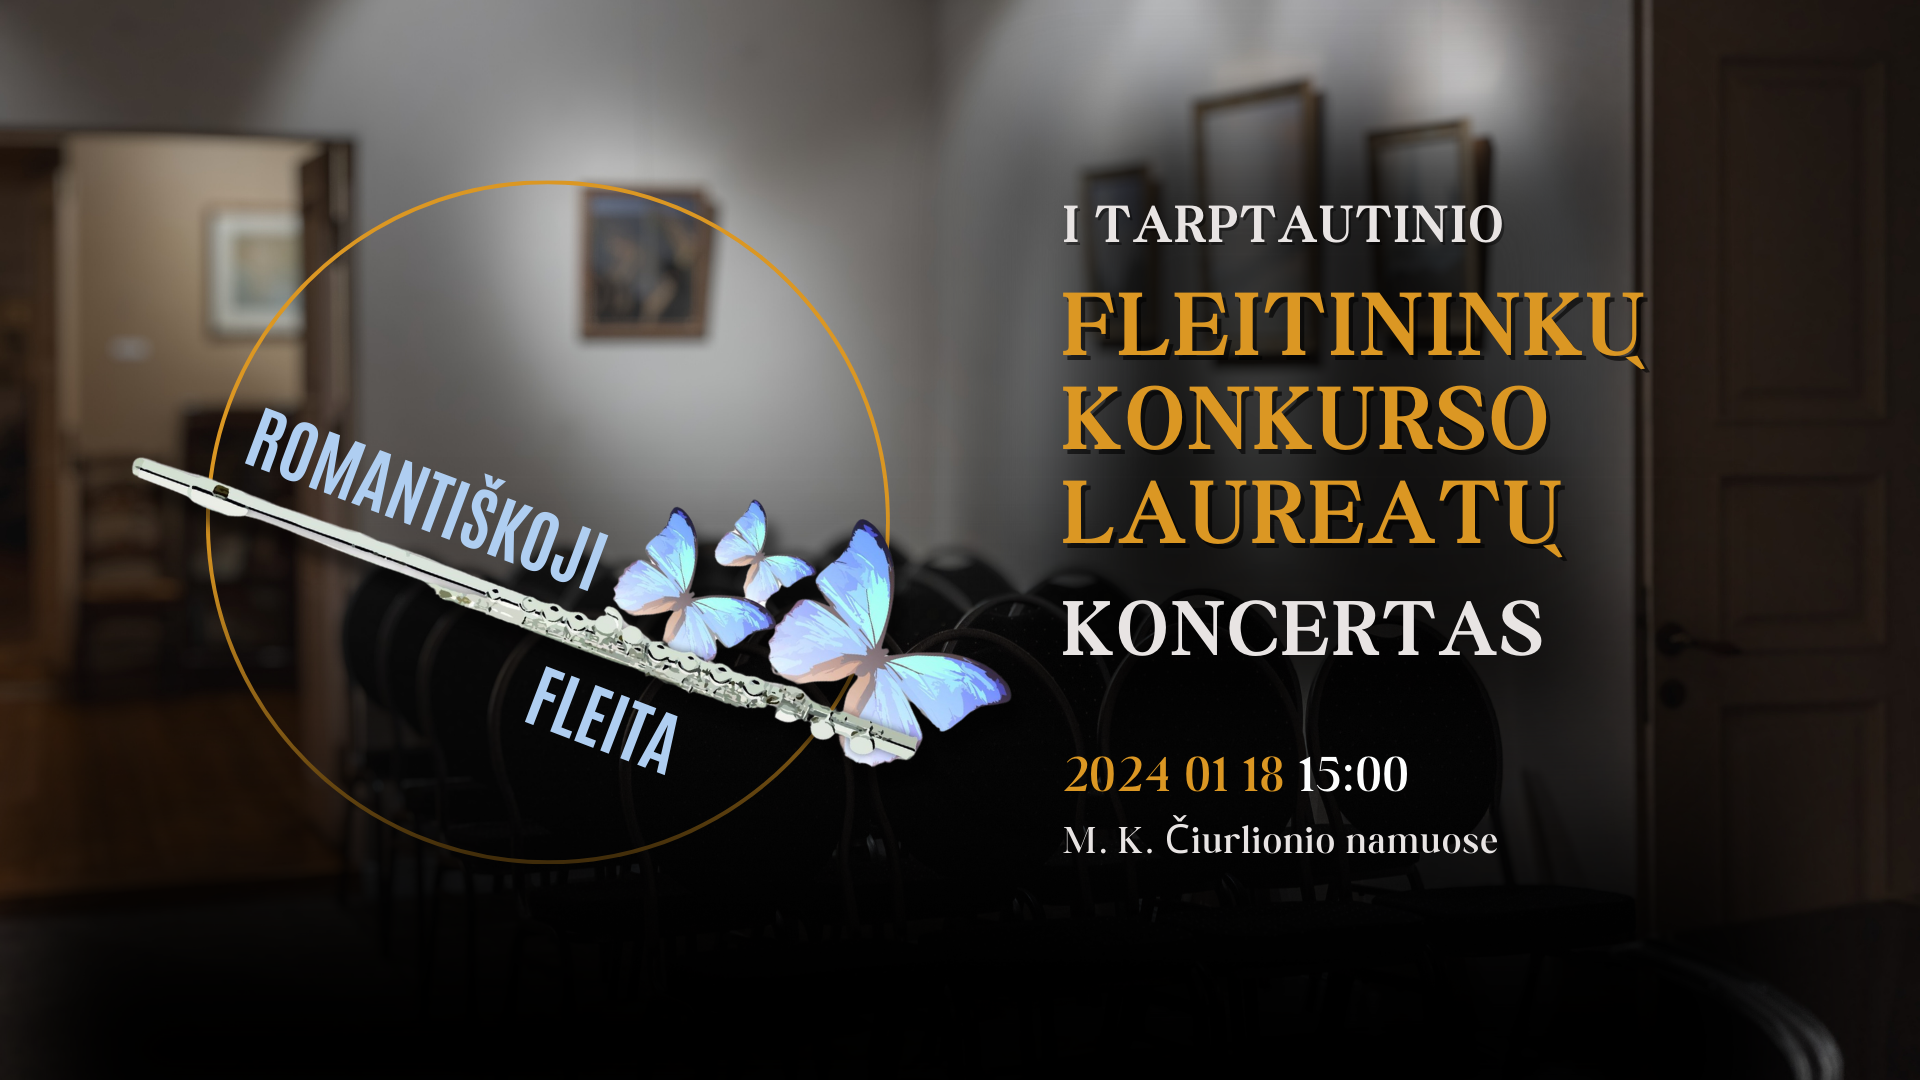 I tarptautinio fleitininkų konkurso „Romantiškoji fleita“ laureatų koncertas